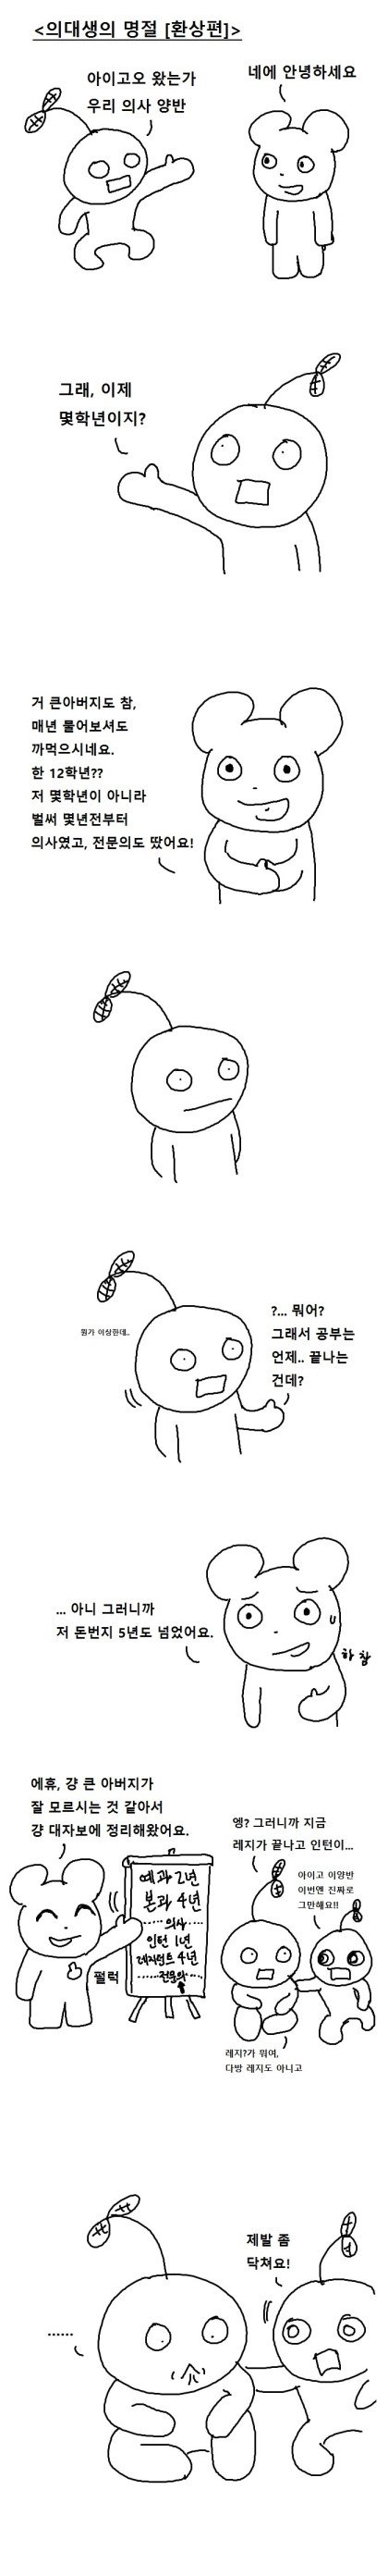 포텐에 올라온 의대생의 명절 만화 2부.manhwa